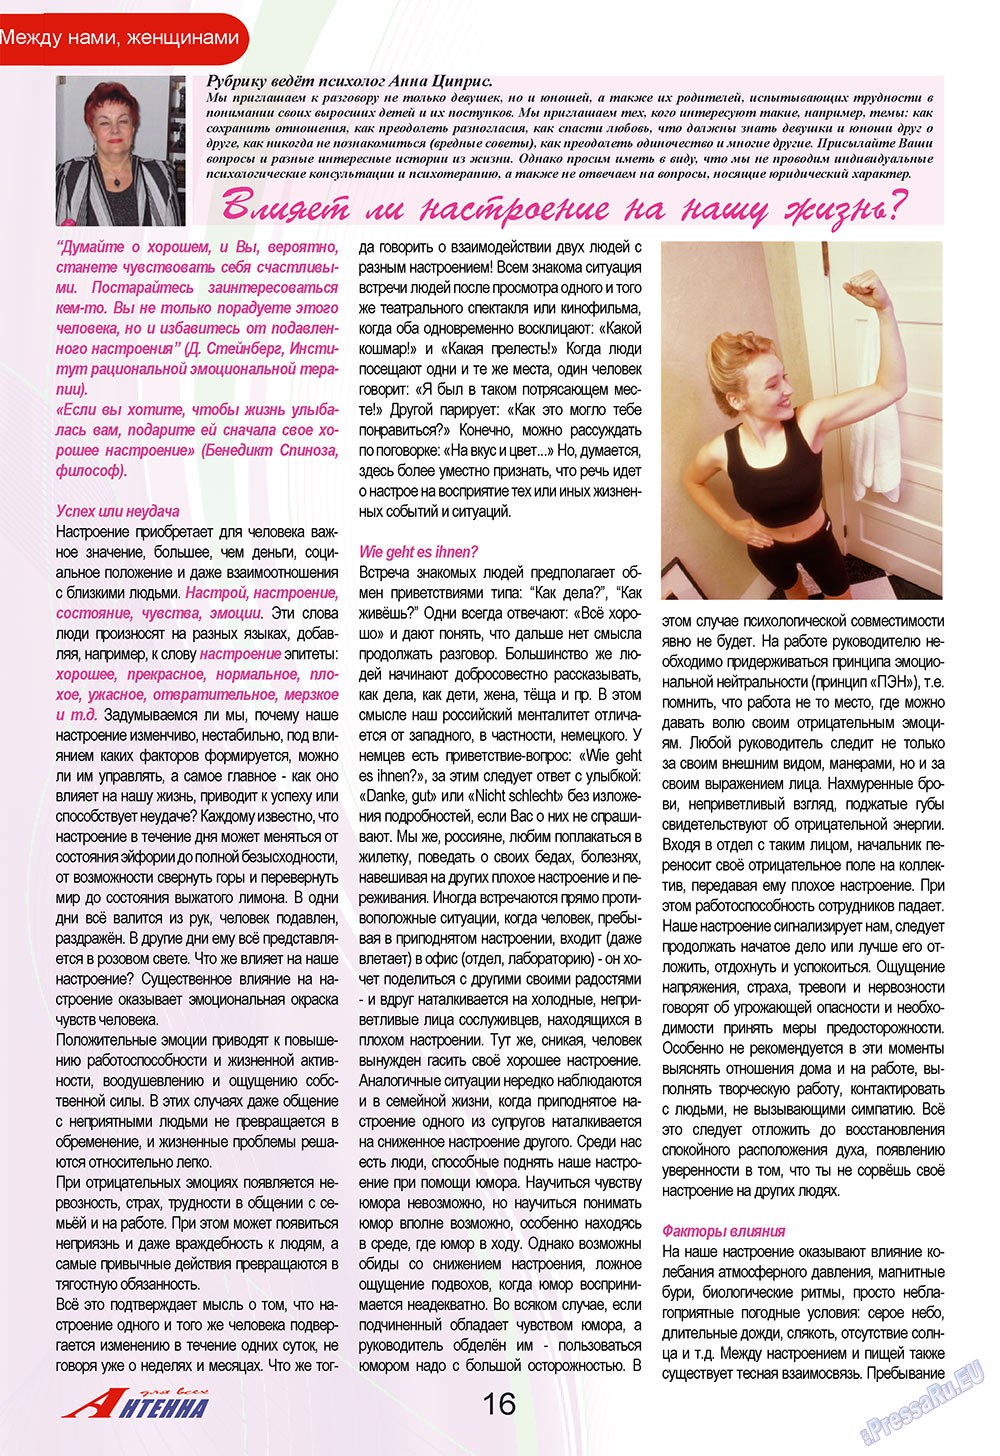 Антенна, журнал. 2009 №9 стр.16